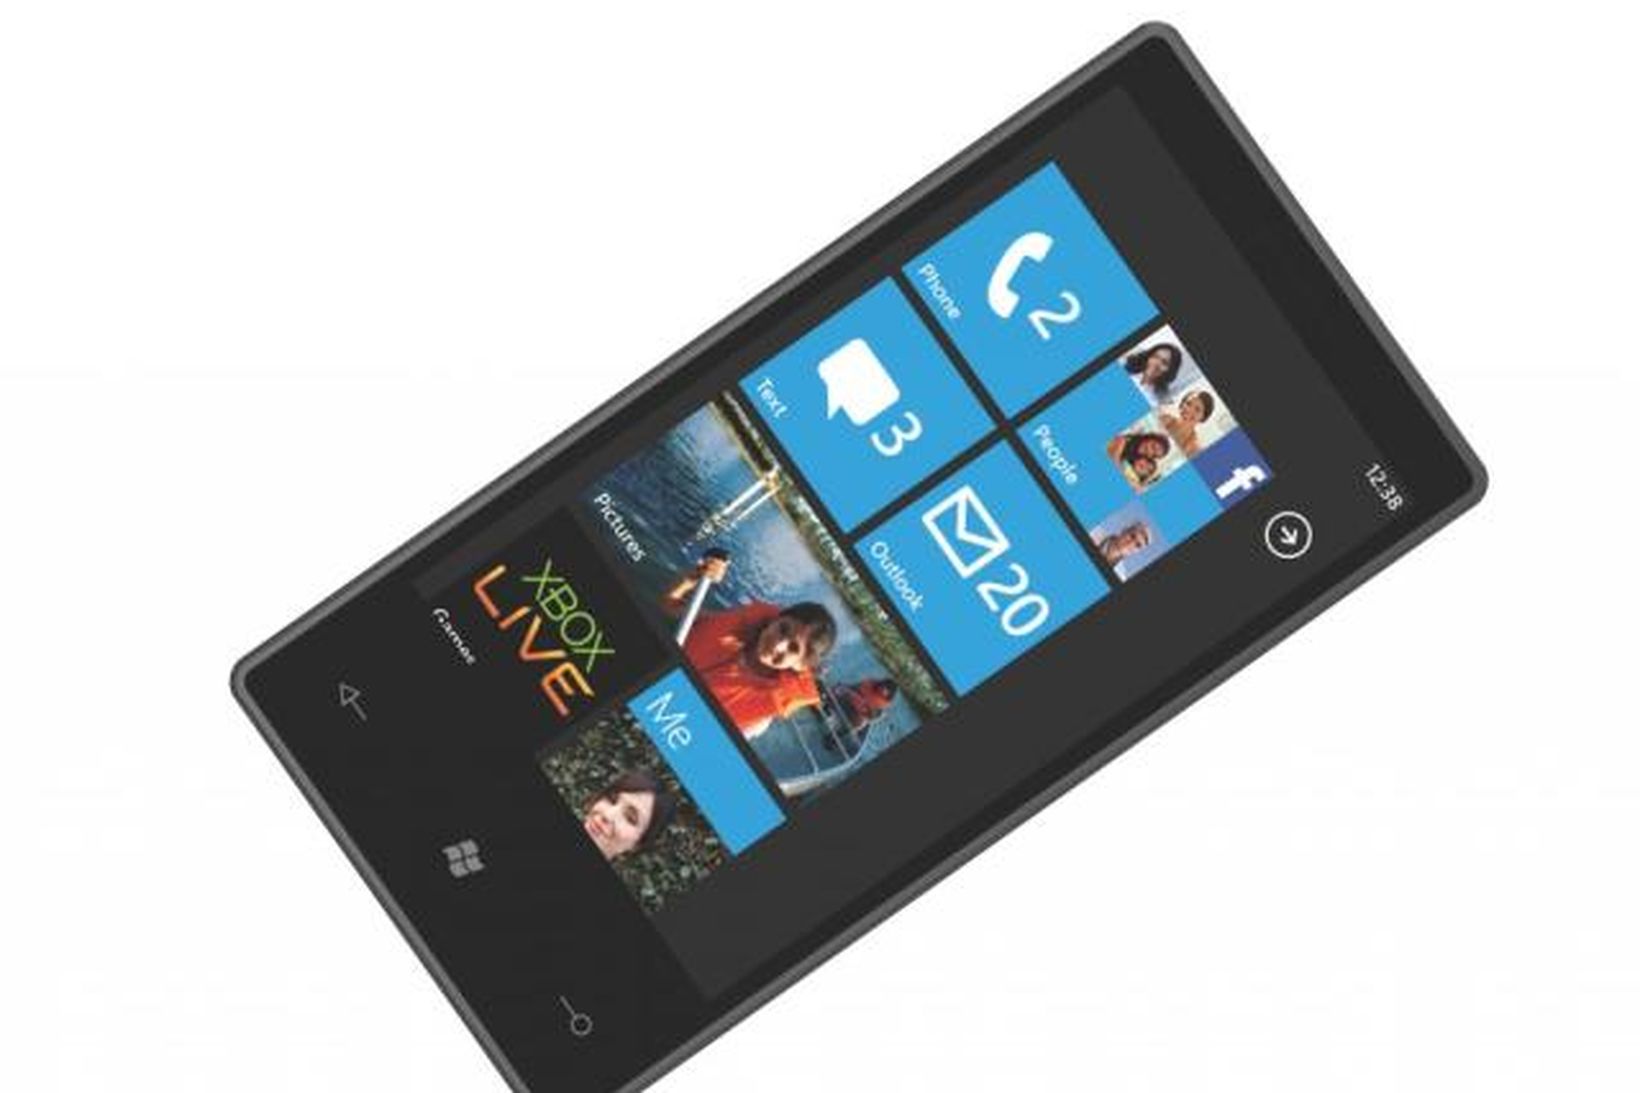 Windows Phone 7 snjallsími.